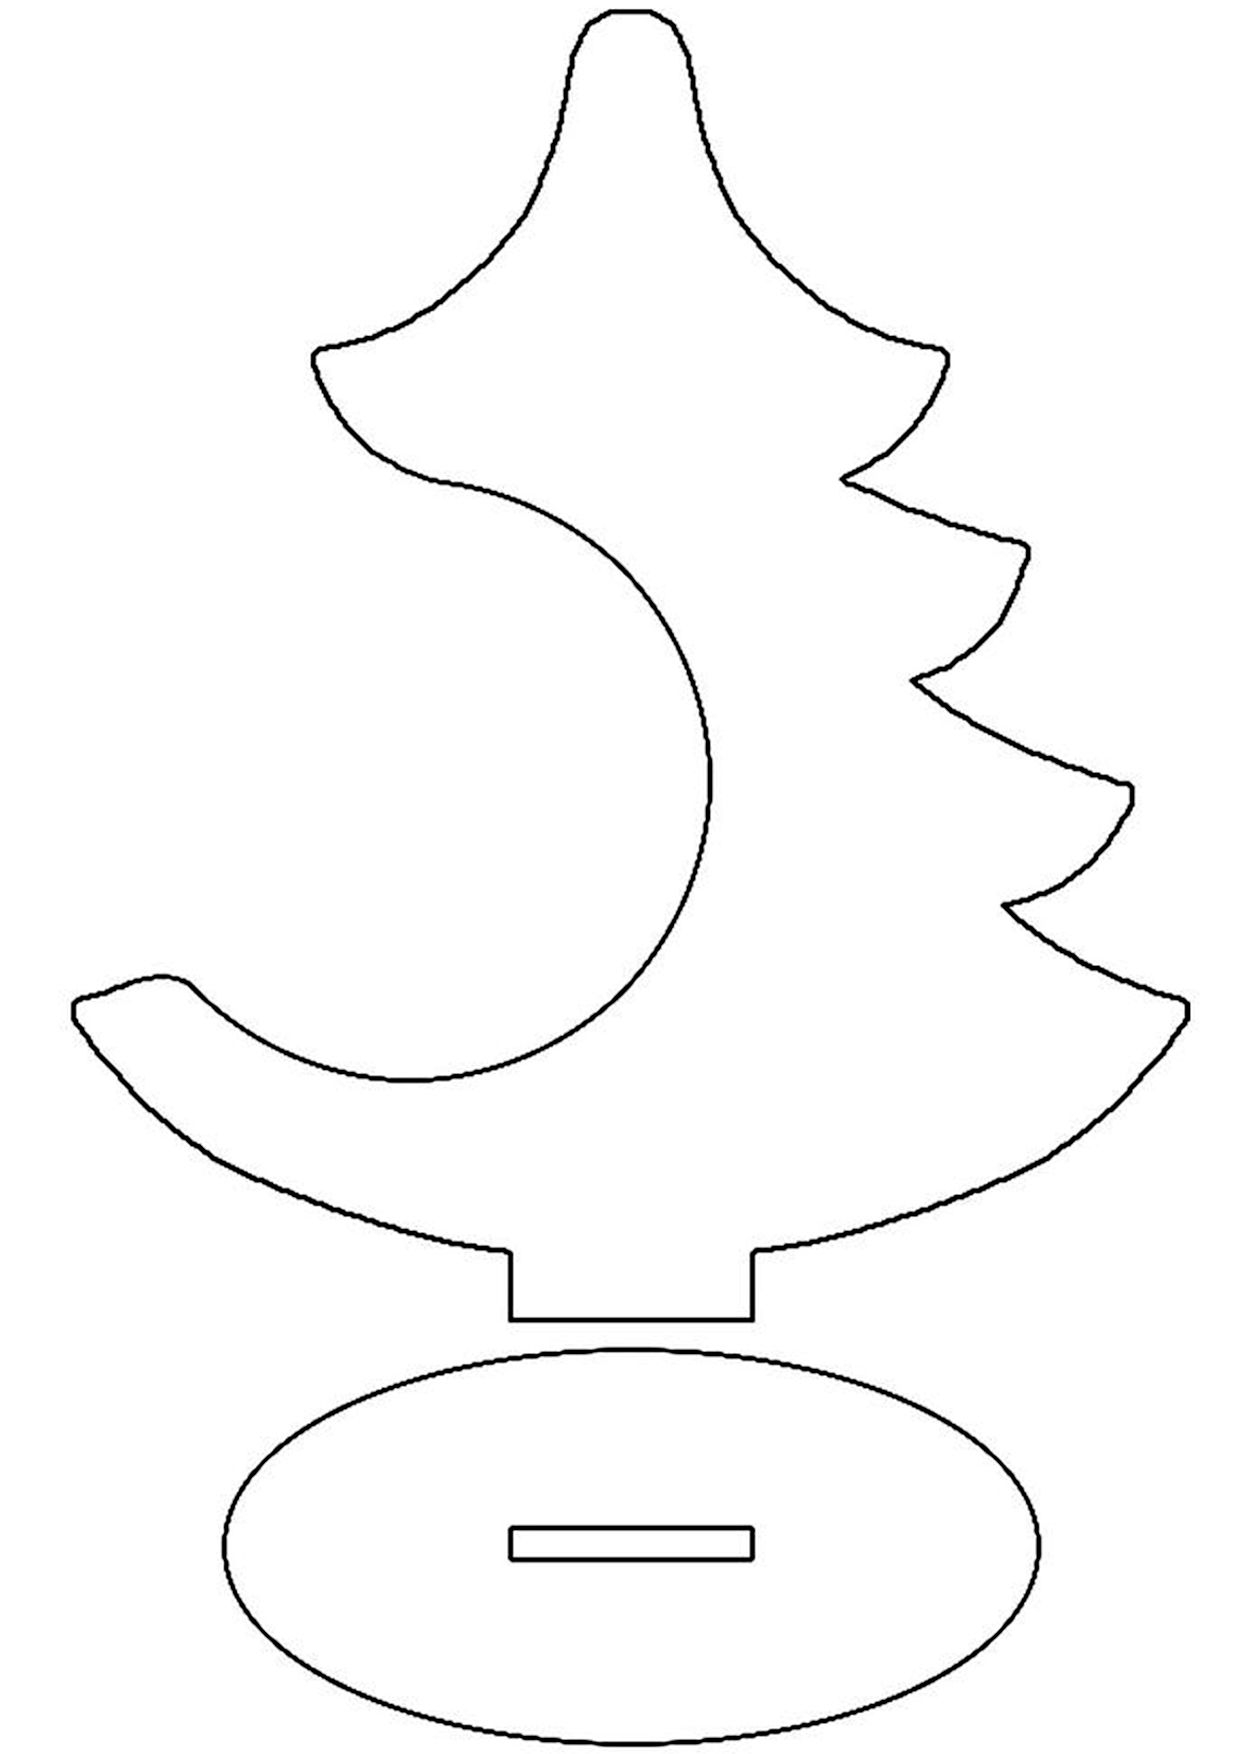 Как сделать силуэт елки из бумаги своими руками: силуэты елей и новогодних елок из картона